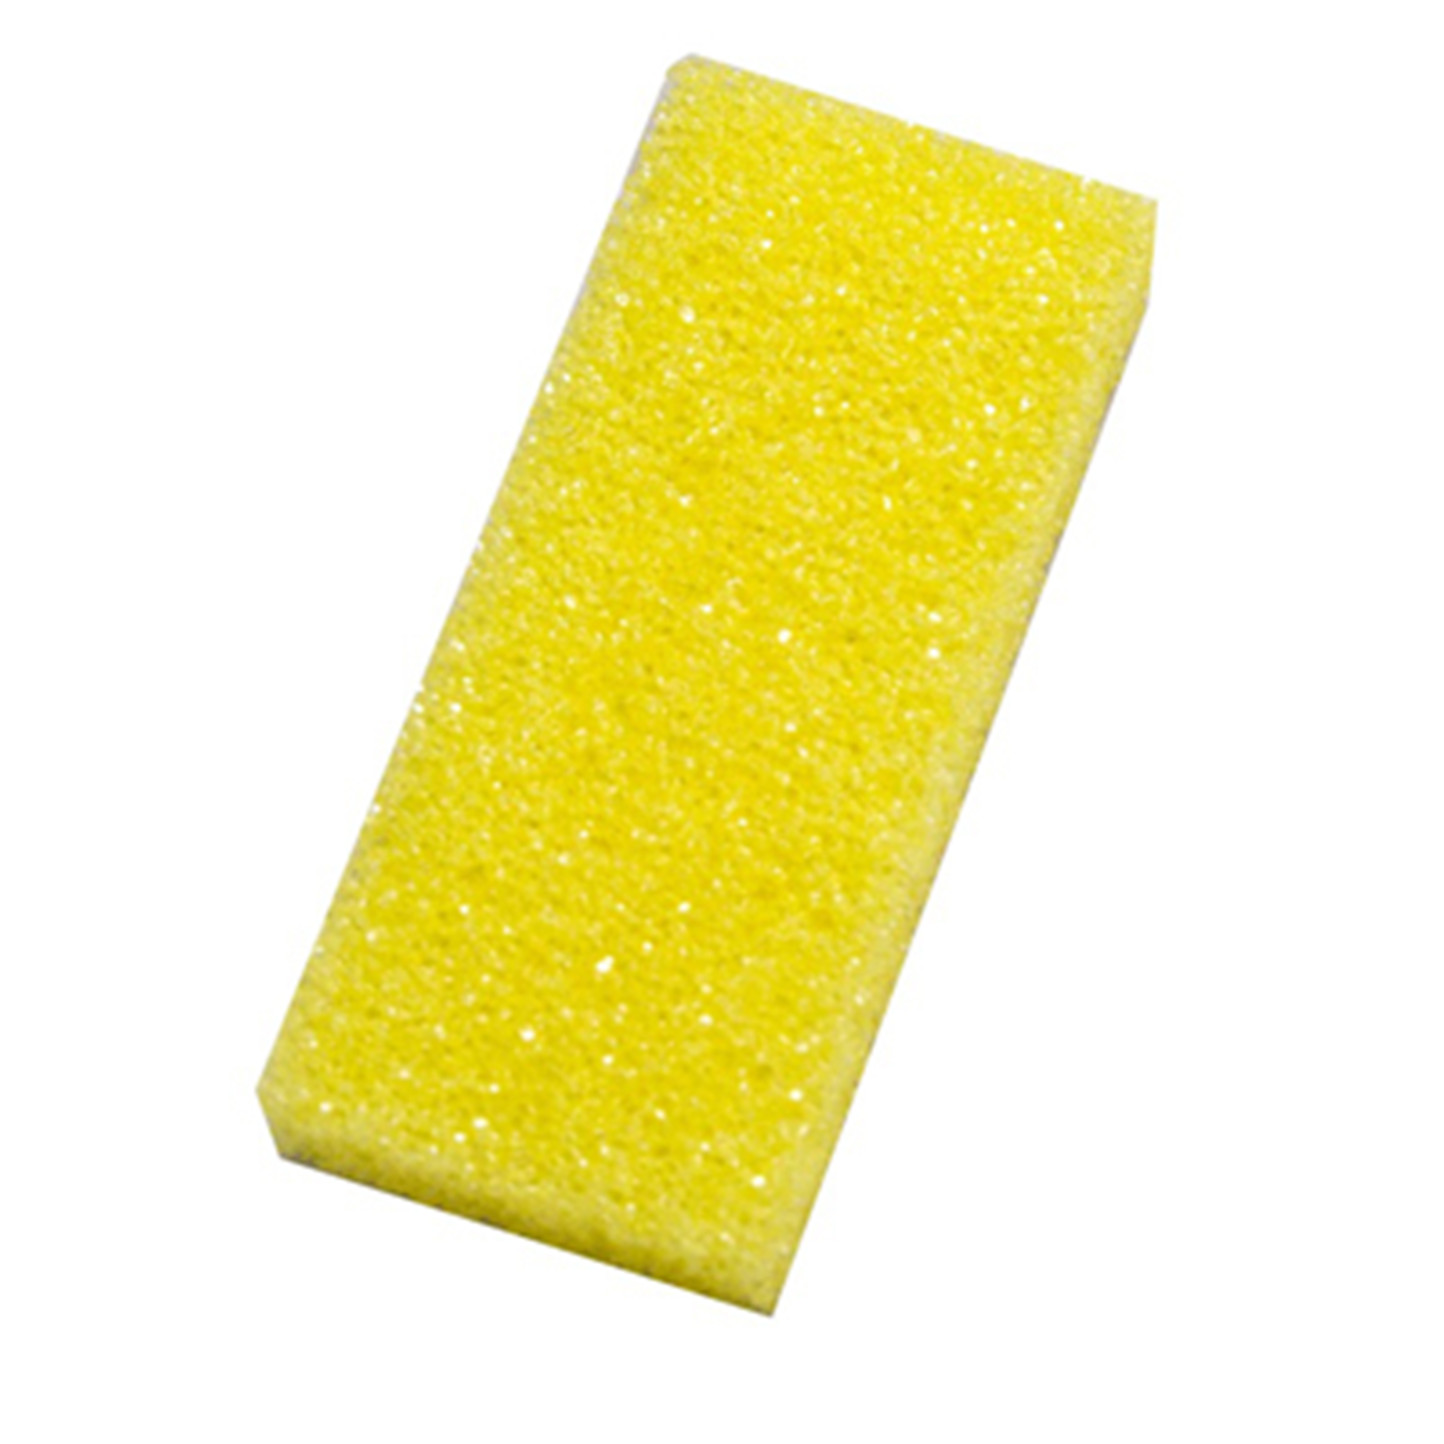 salon use foot beauty pumice sponge